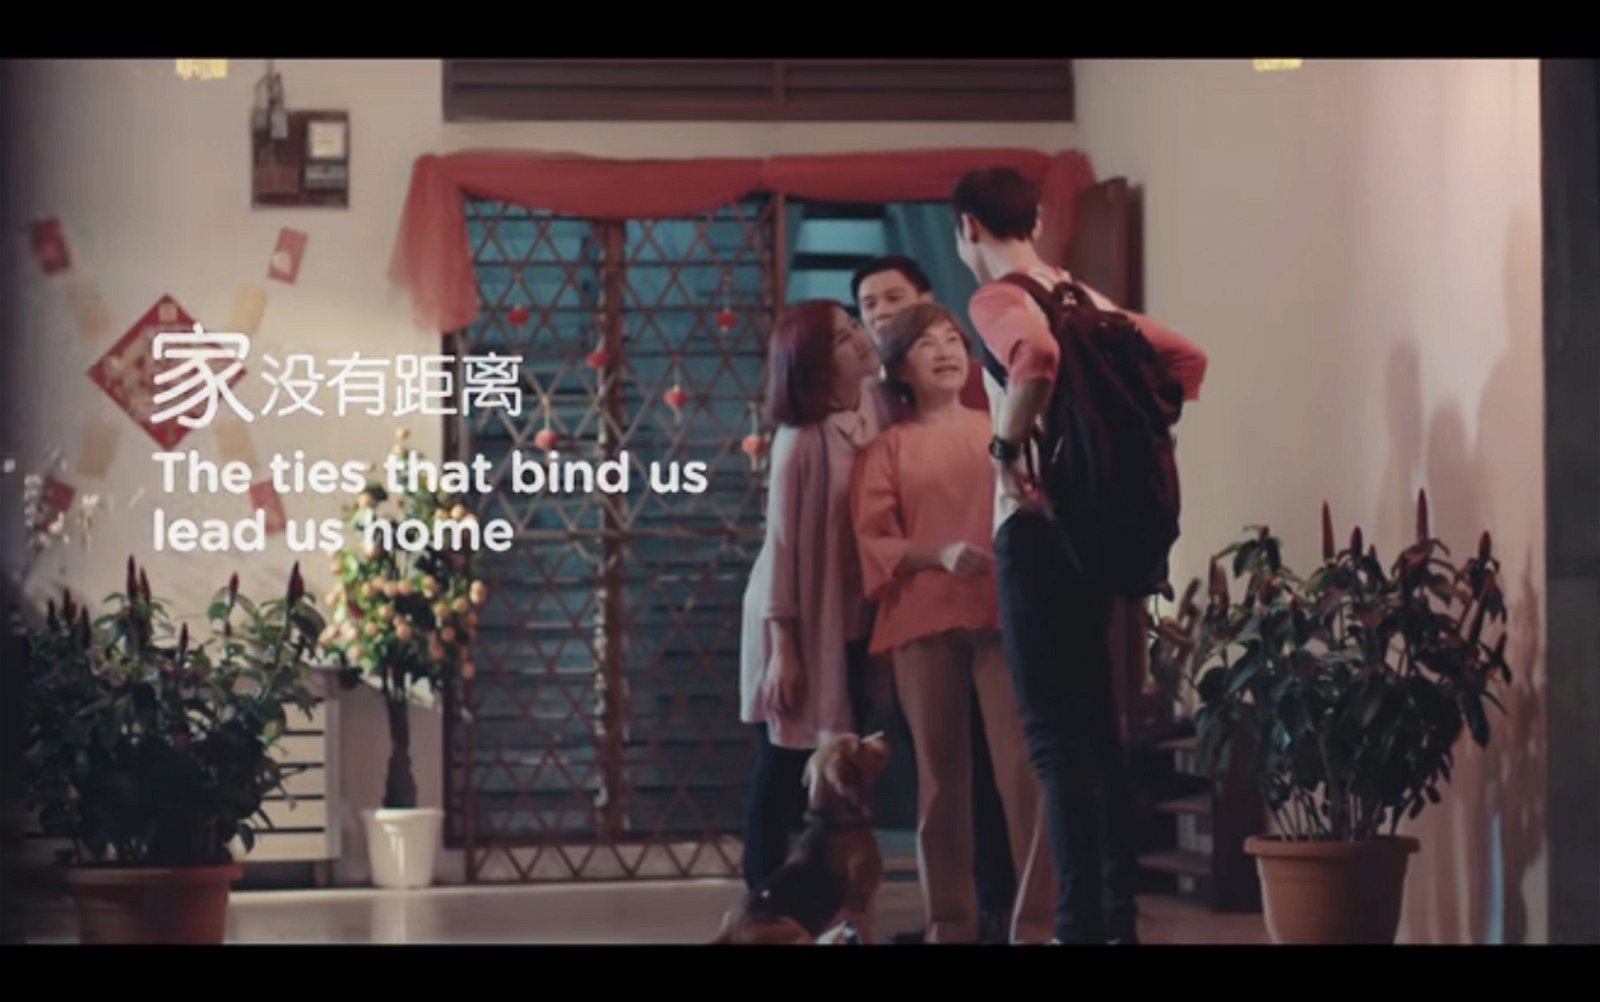 亚航今年推出主题为“家没有距离”的新年广告。